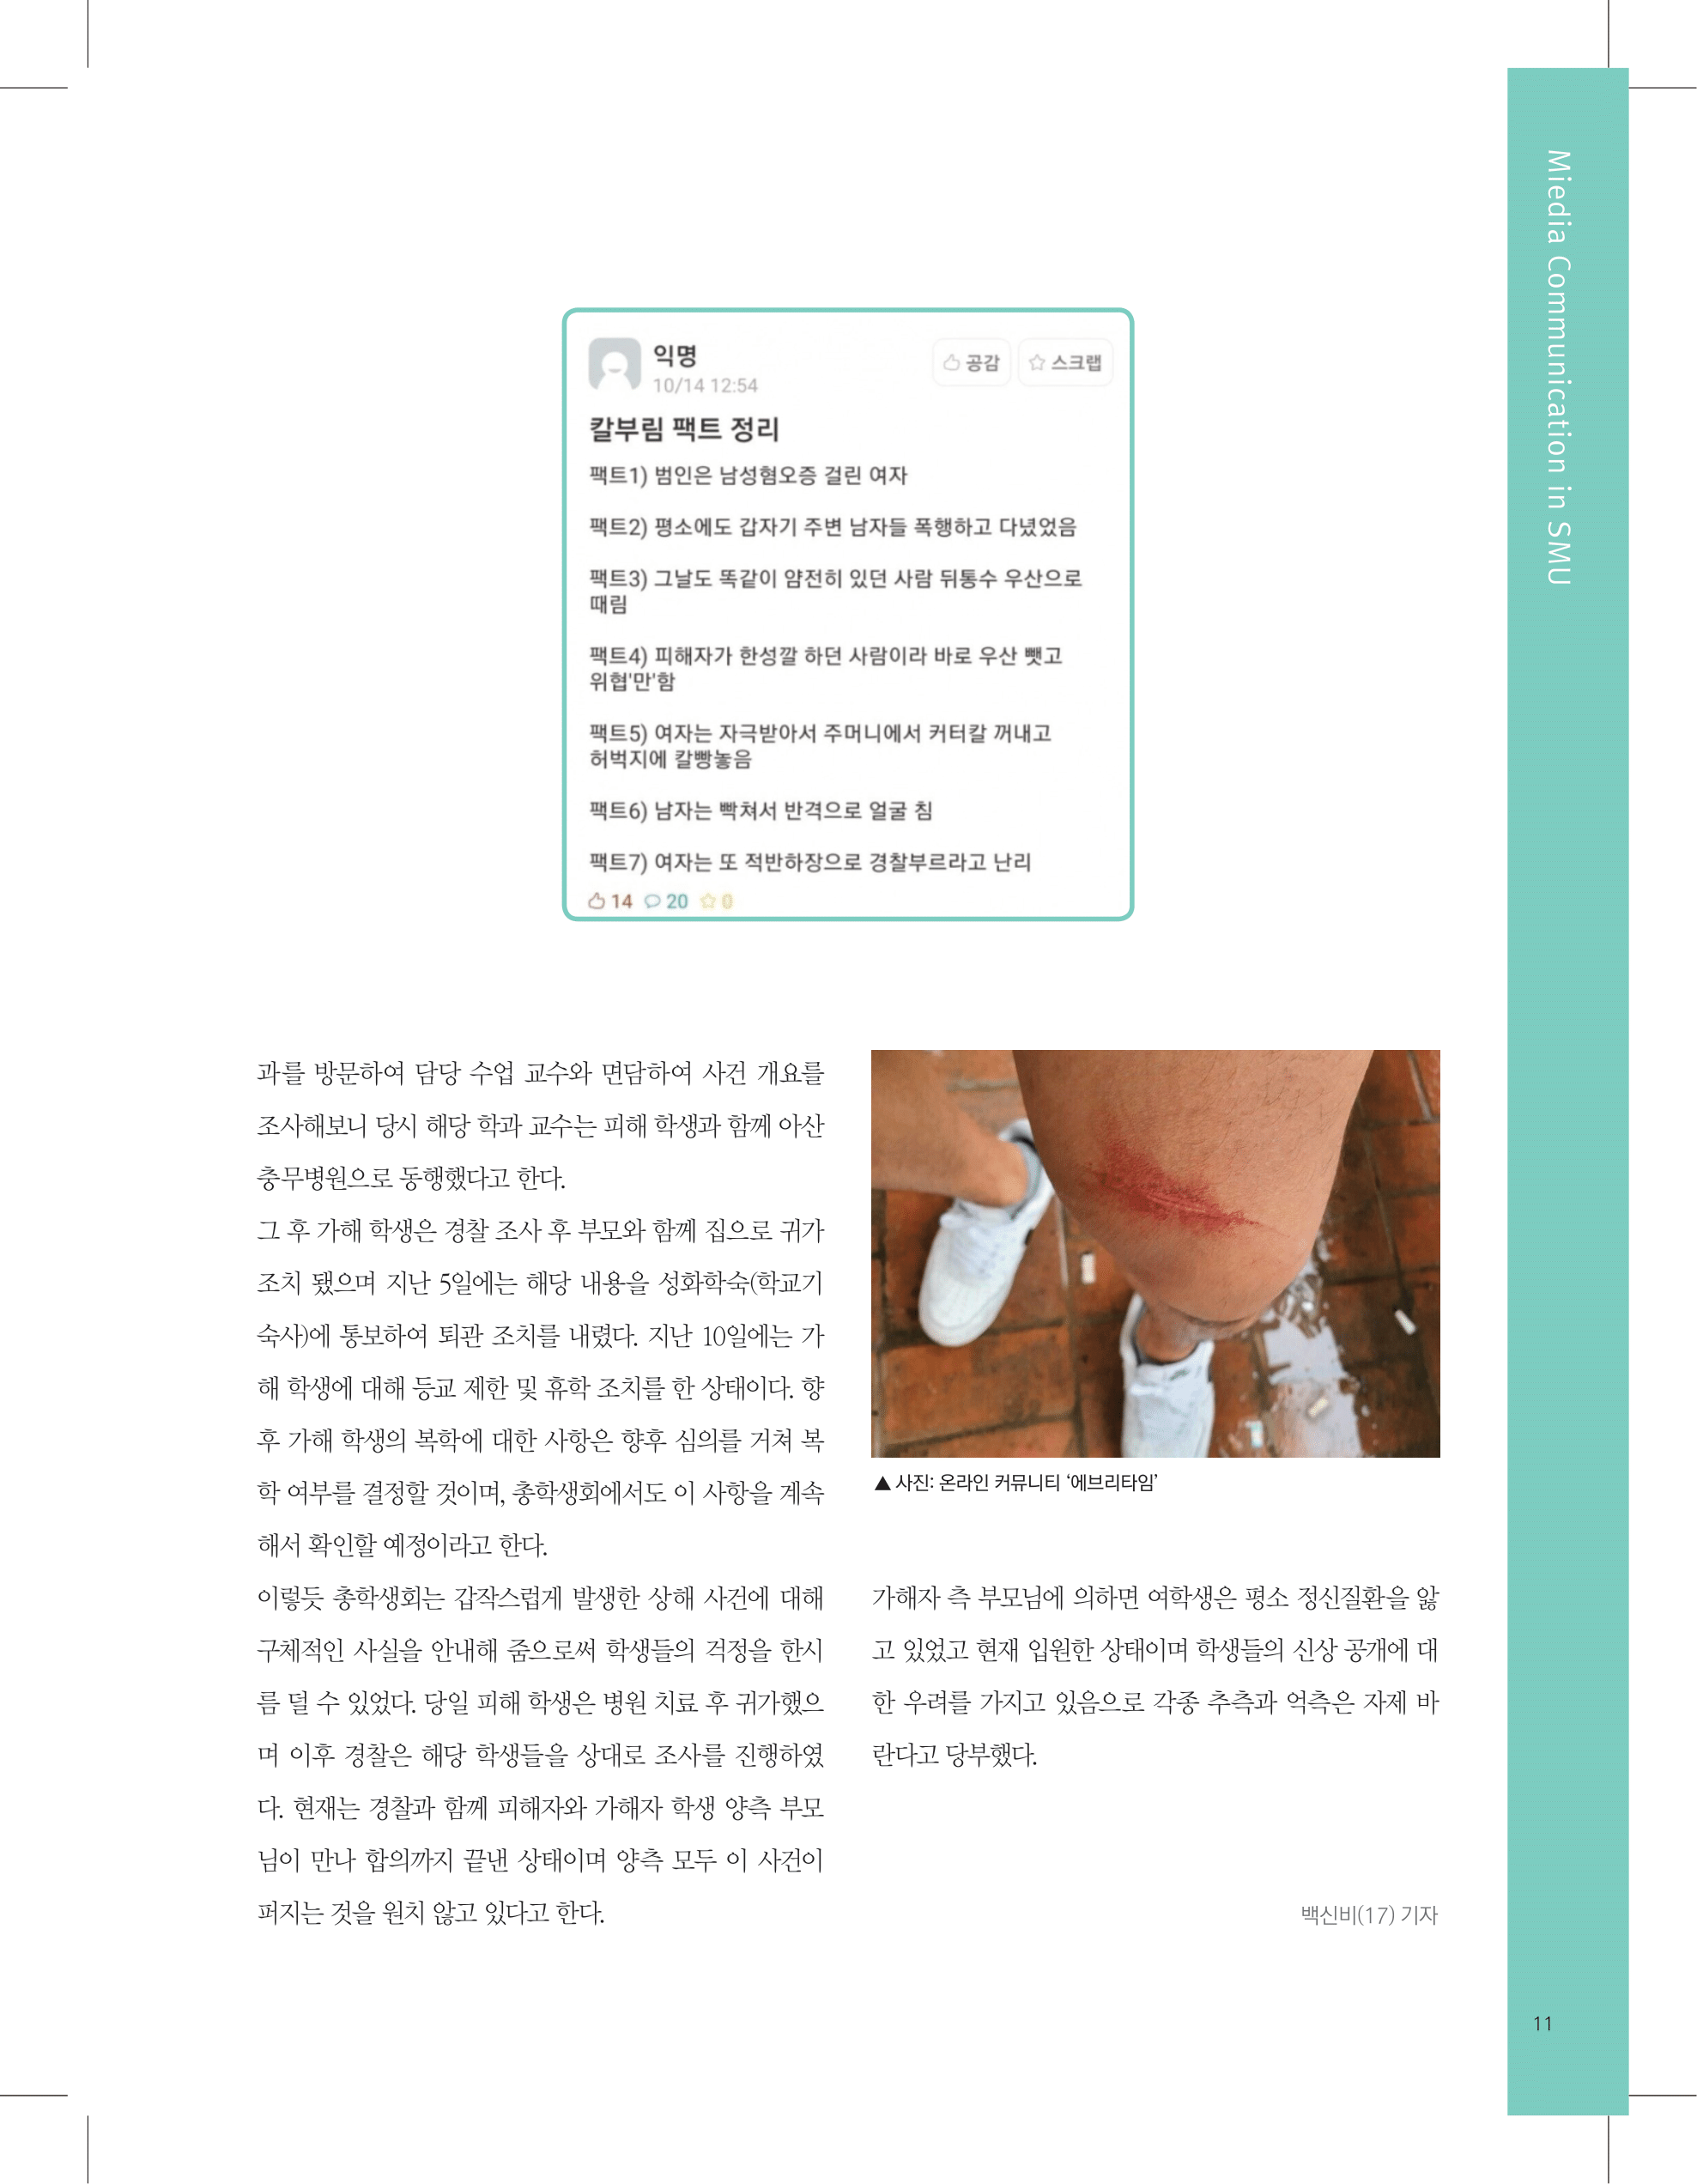 뜻새김 신문 74호 11